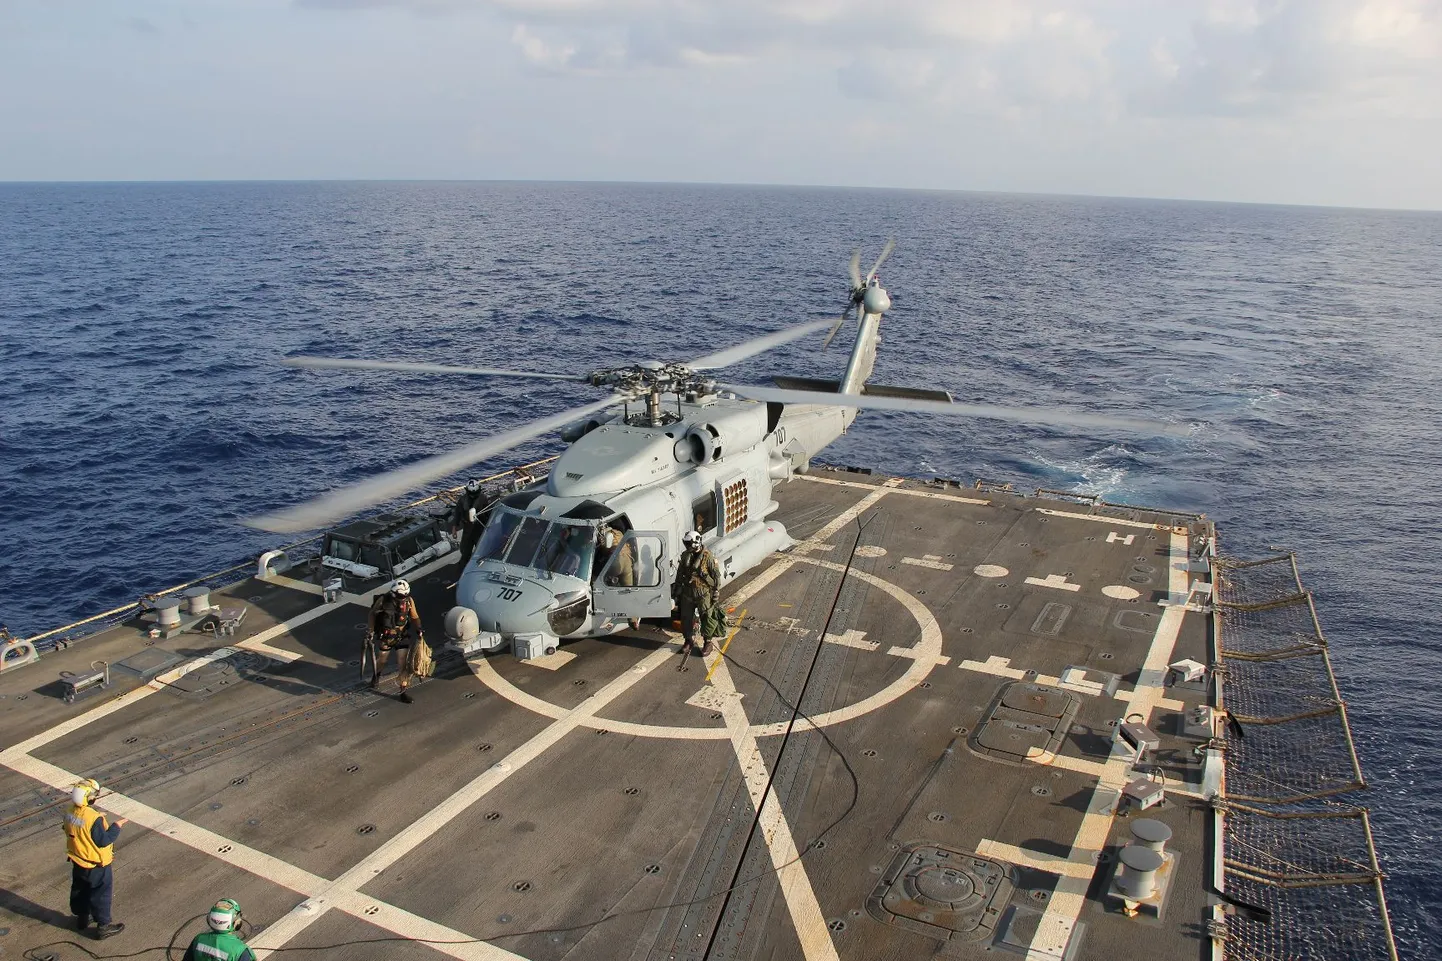 USA mereväe kopter, mis osaleb Malaysia Airlinesi lennuki otsimisel, maandus Tai lahes viibiva USS Pinckney pardal.